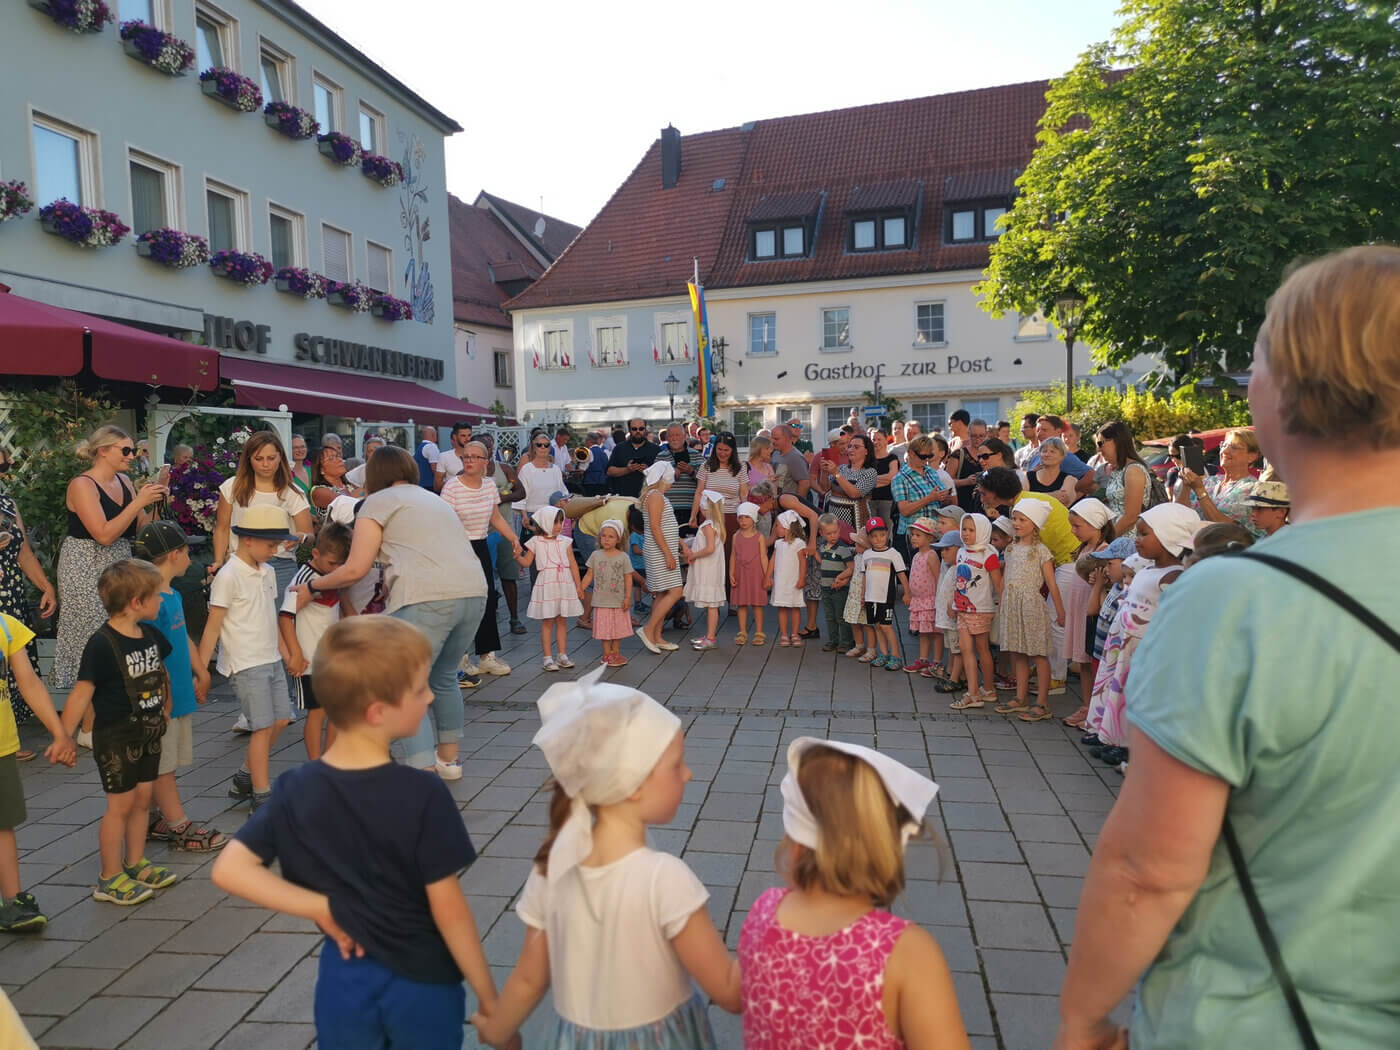 Zapfenstreich Ebermannstadt - Kinder mit weißen Hauben